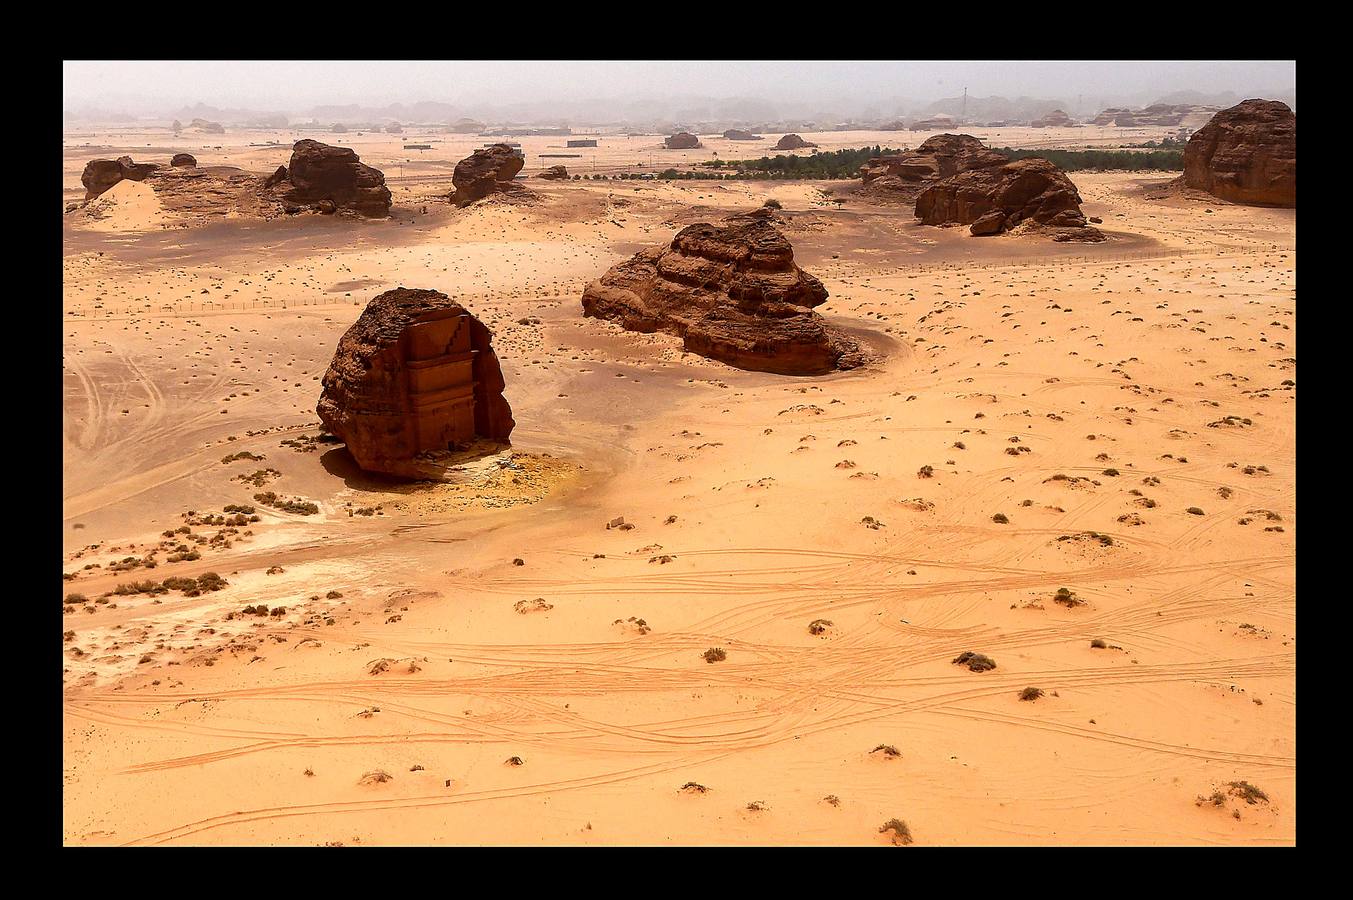 Madain Saleh es un conjunto de restos arqueológicos tallados en roca arenisca, considerados los segundos más importantes de la cultura nabatea después de Petra. Emplazados cerca de la ciudad de Al-Hula, al noroeste de Arabia Saudí, emergen en el desierto como gigantescas rocas labradas en forma de palacios, templos y grandes tumbas de hasta 16 metros de altura. Al-Ula, un área poco conocida, rica en vestigios de este tipo, que fue alguna vez encrucijada de civilizaciones, es vista como una joya turística en Arabia Saudí, que este año comenzará a emitir visas para turistas por primera vez.